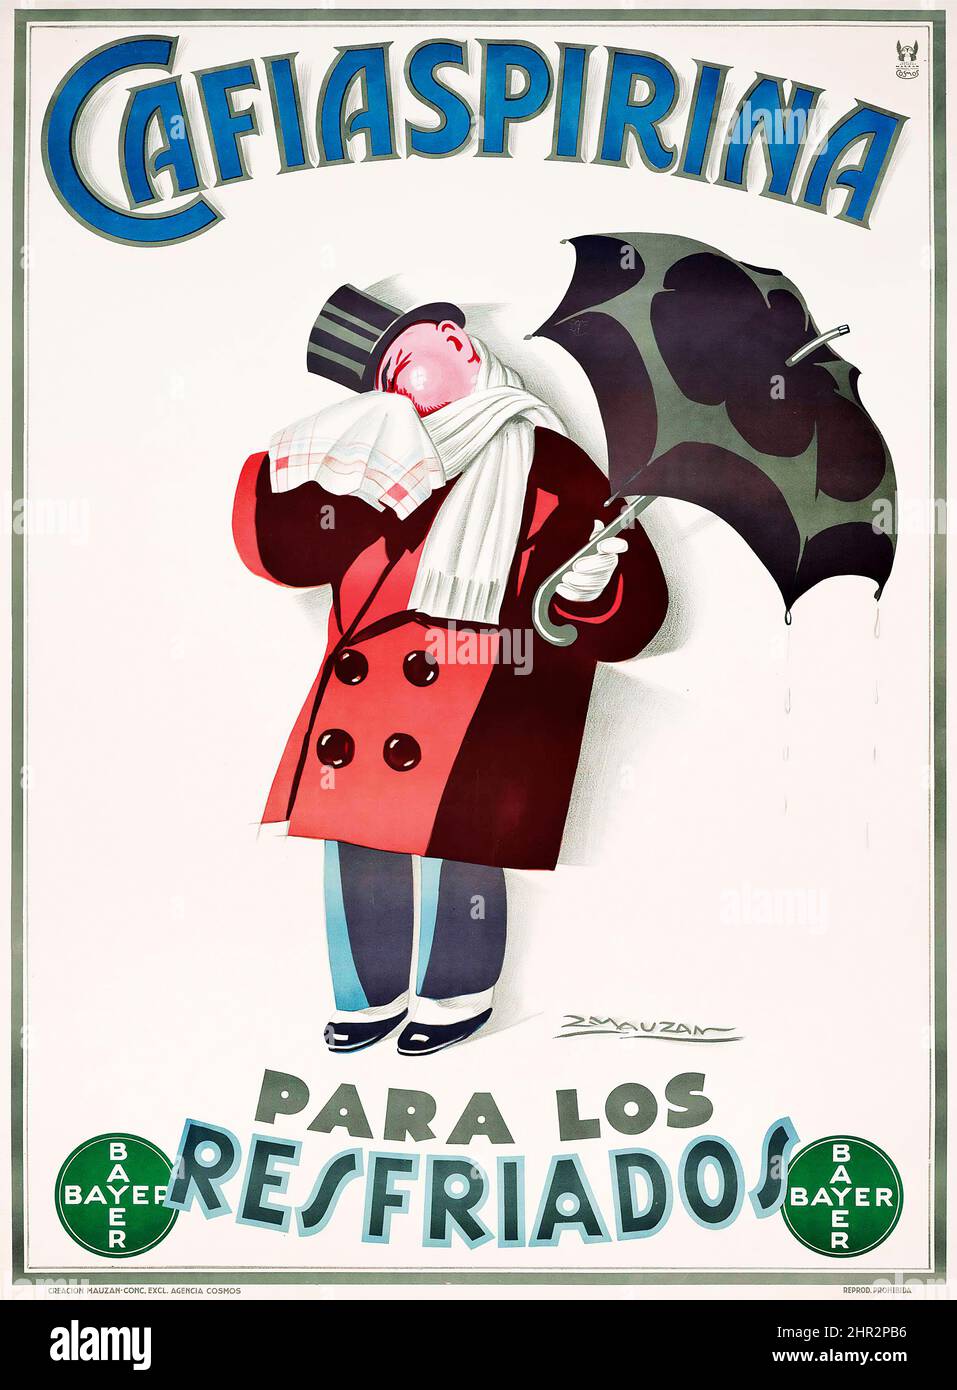 Achille L. Mauzan (1883-1952) CAFIASPIRINA, PARA LOS RESFRIADOS - affiche publicitaire vintage. BAYER. Banque D'Images